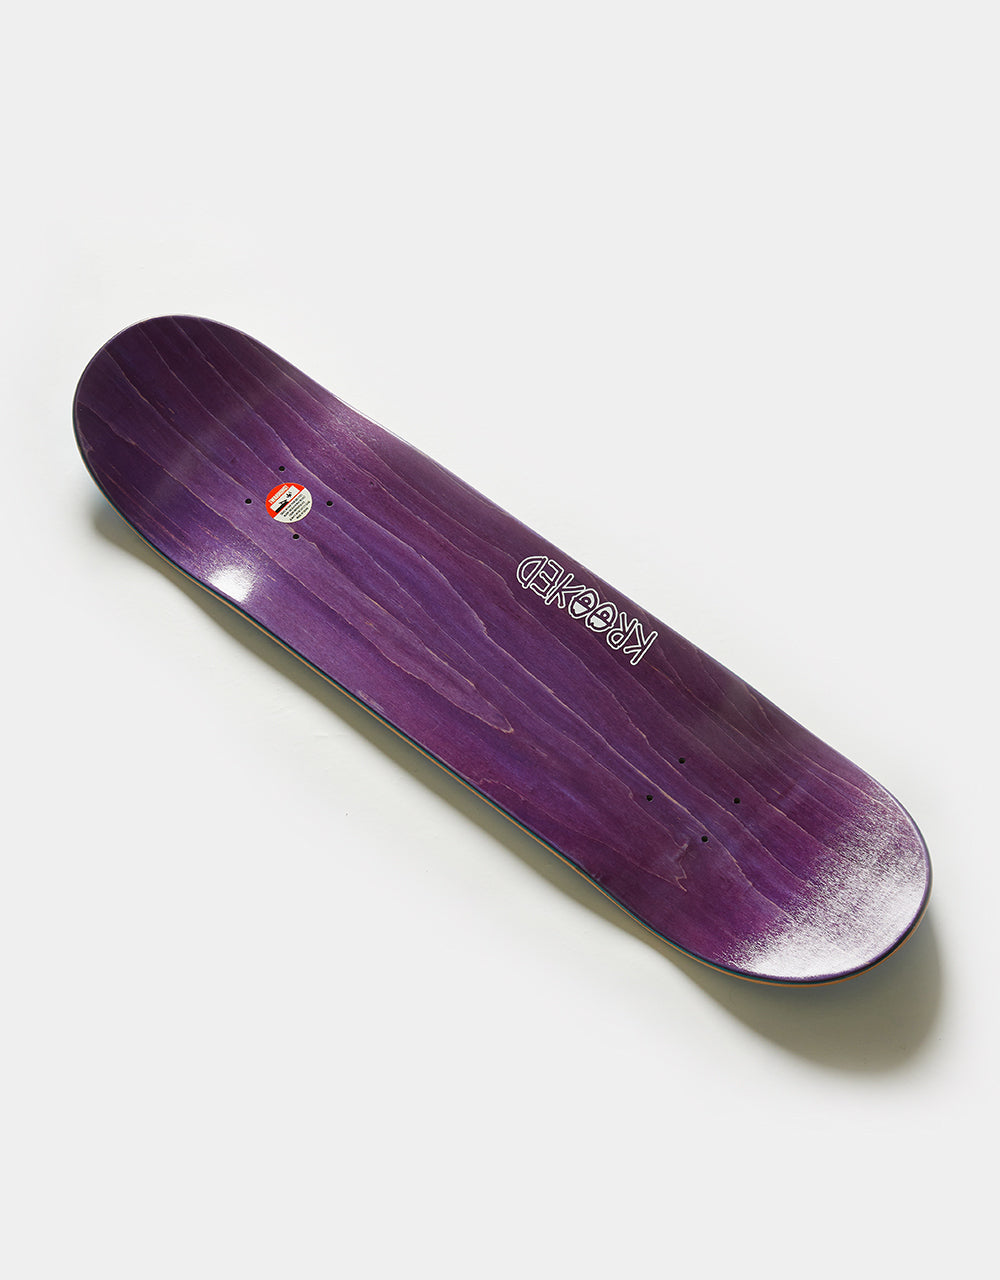 Krooked Worrest Southbound Skateboard Deck - 8.25"